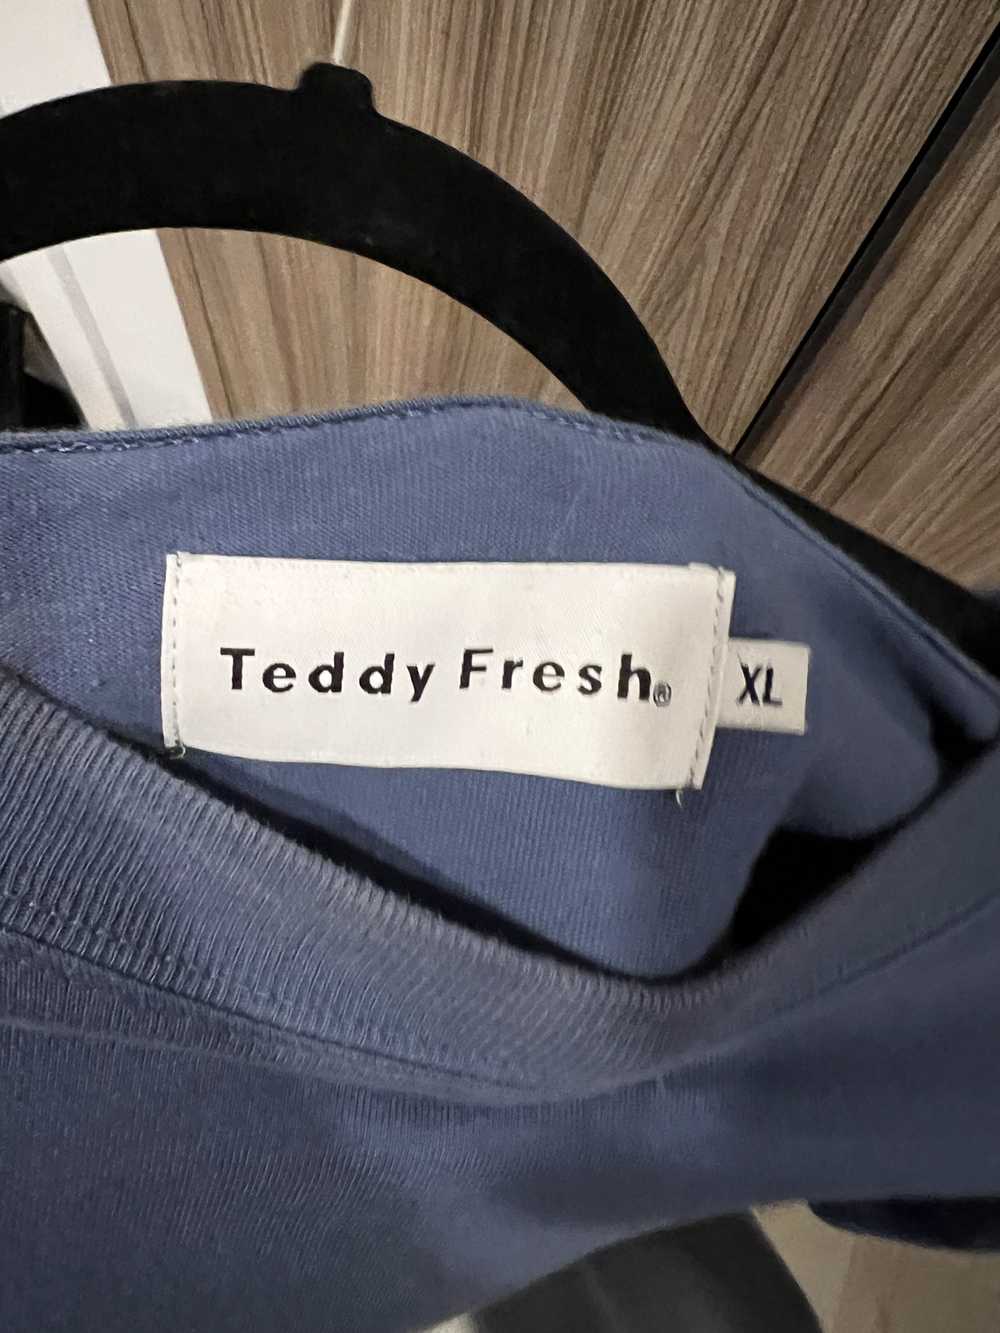 Teddy Fresh Teddy Fresh 1 Year Anniversary Shirt - image 4